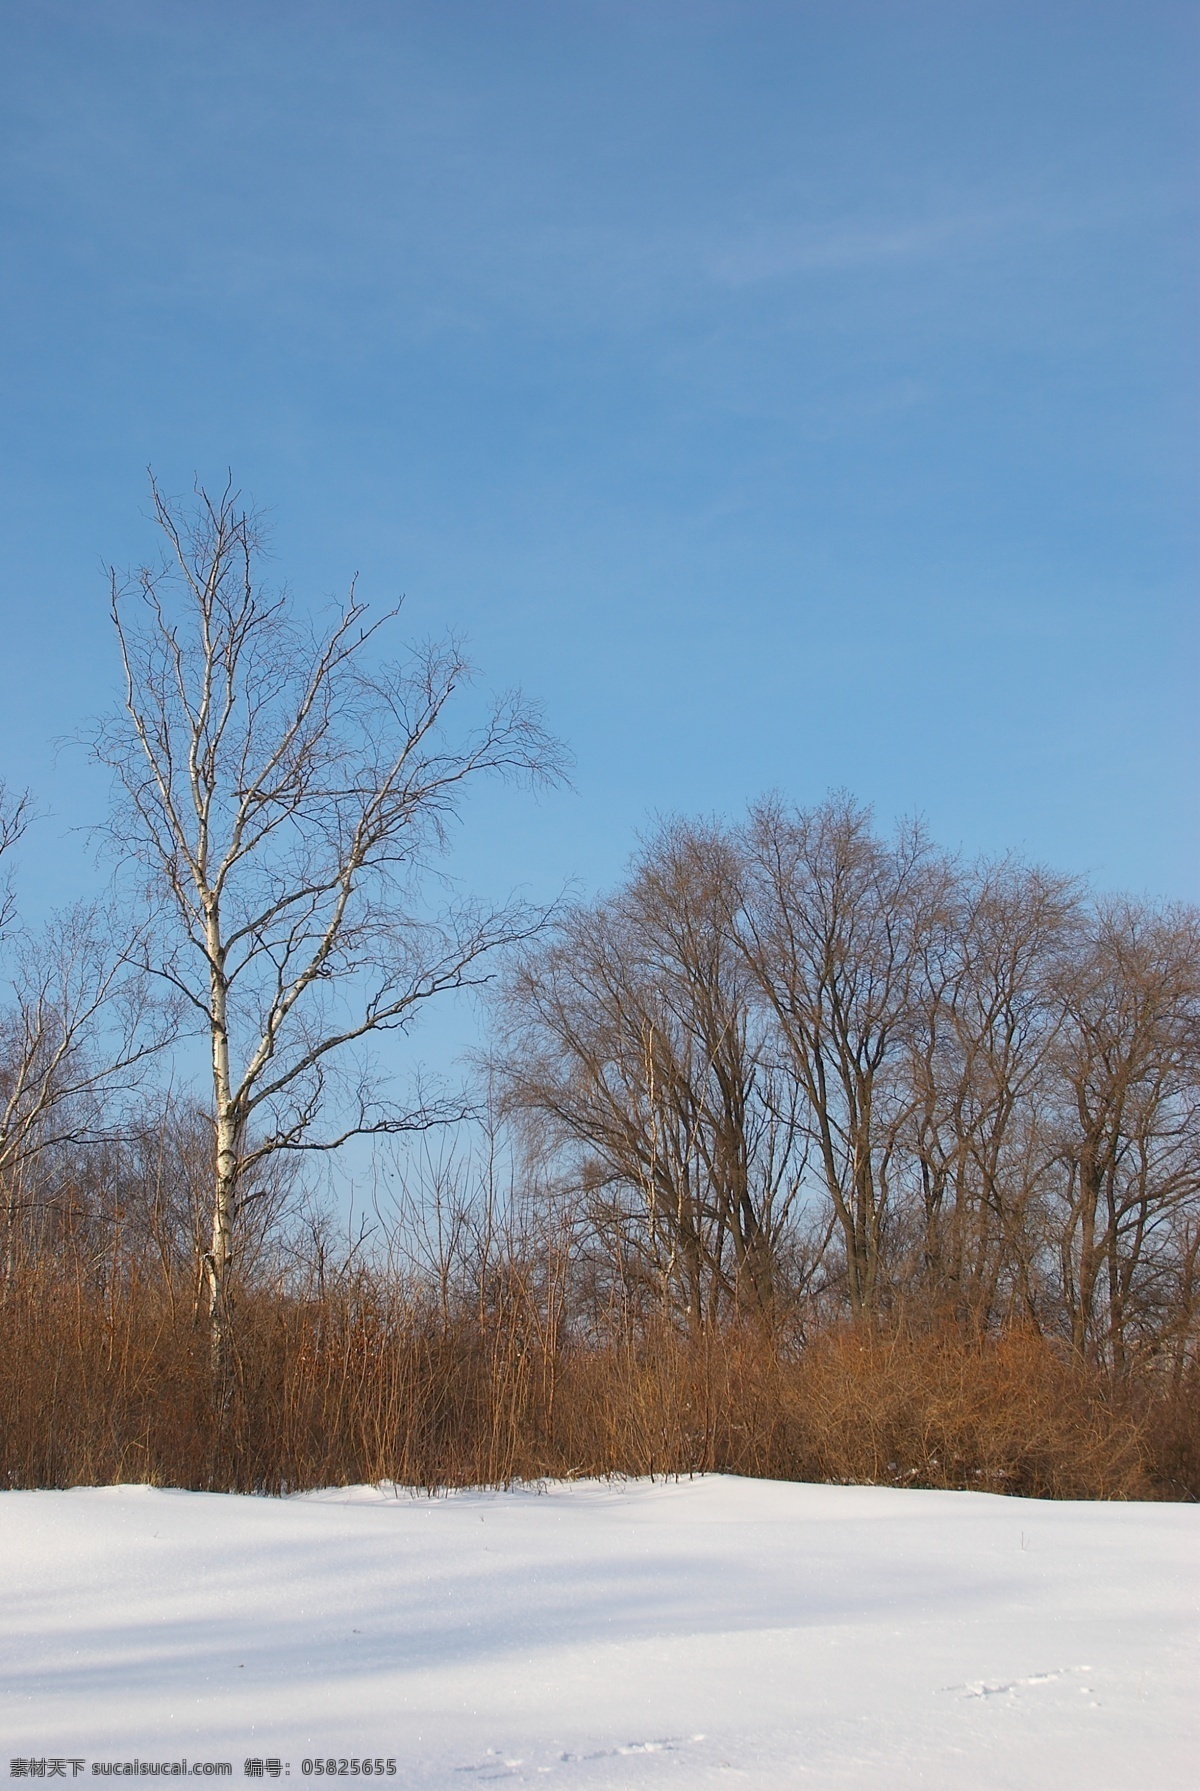 冬天雪景摄影 冬天雪景 冬季 美丽风景 美丽雪景 白雪 积雪 风景摄影 树木 树林 雪地 自然风景 自然景观 蓝色